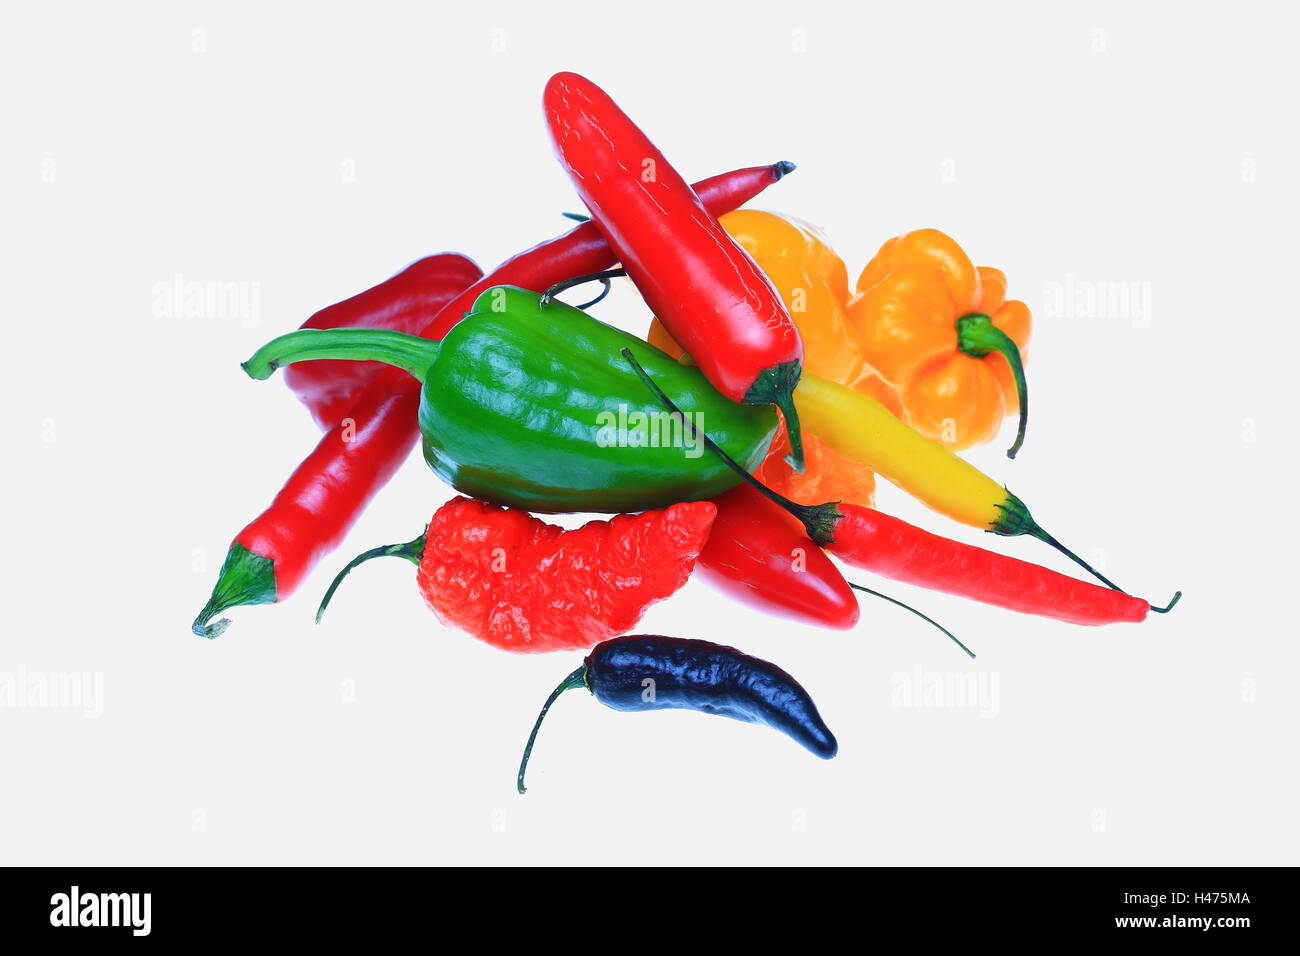 several chili pepper, Capsicum annuum Stock Photo